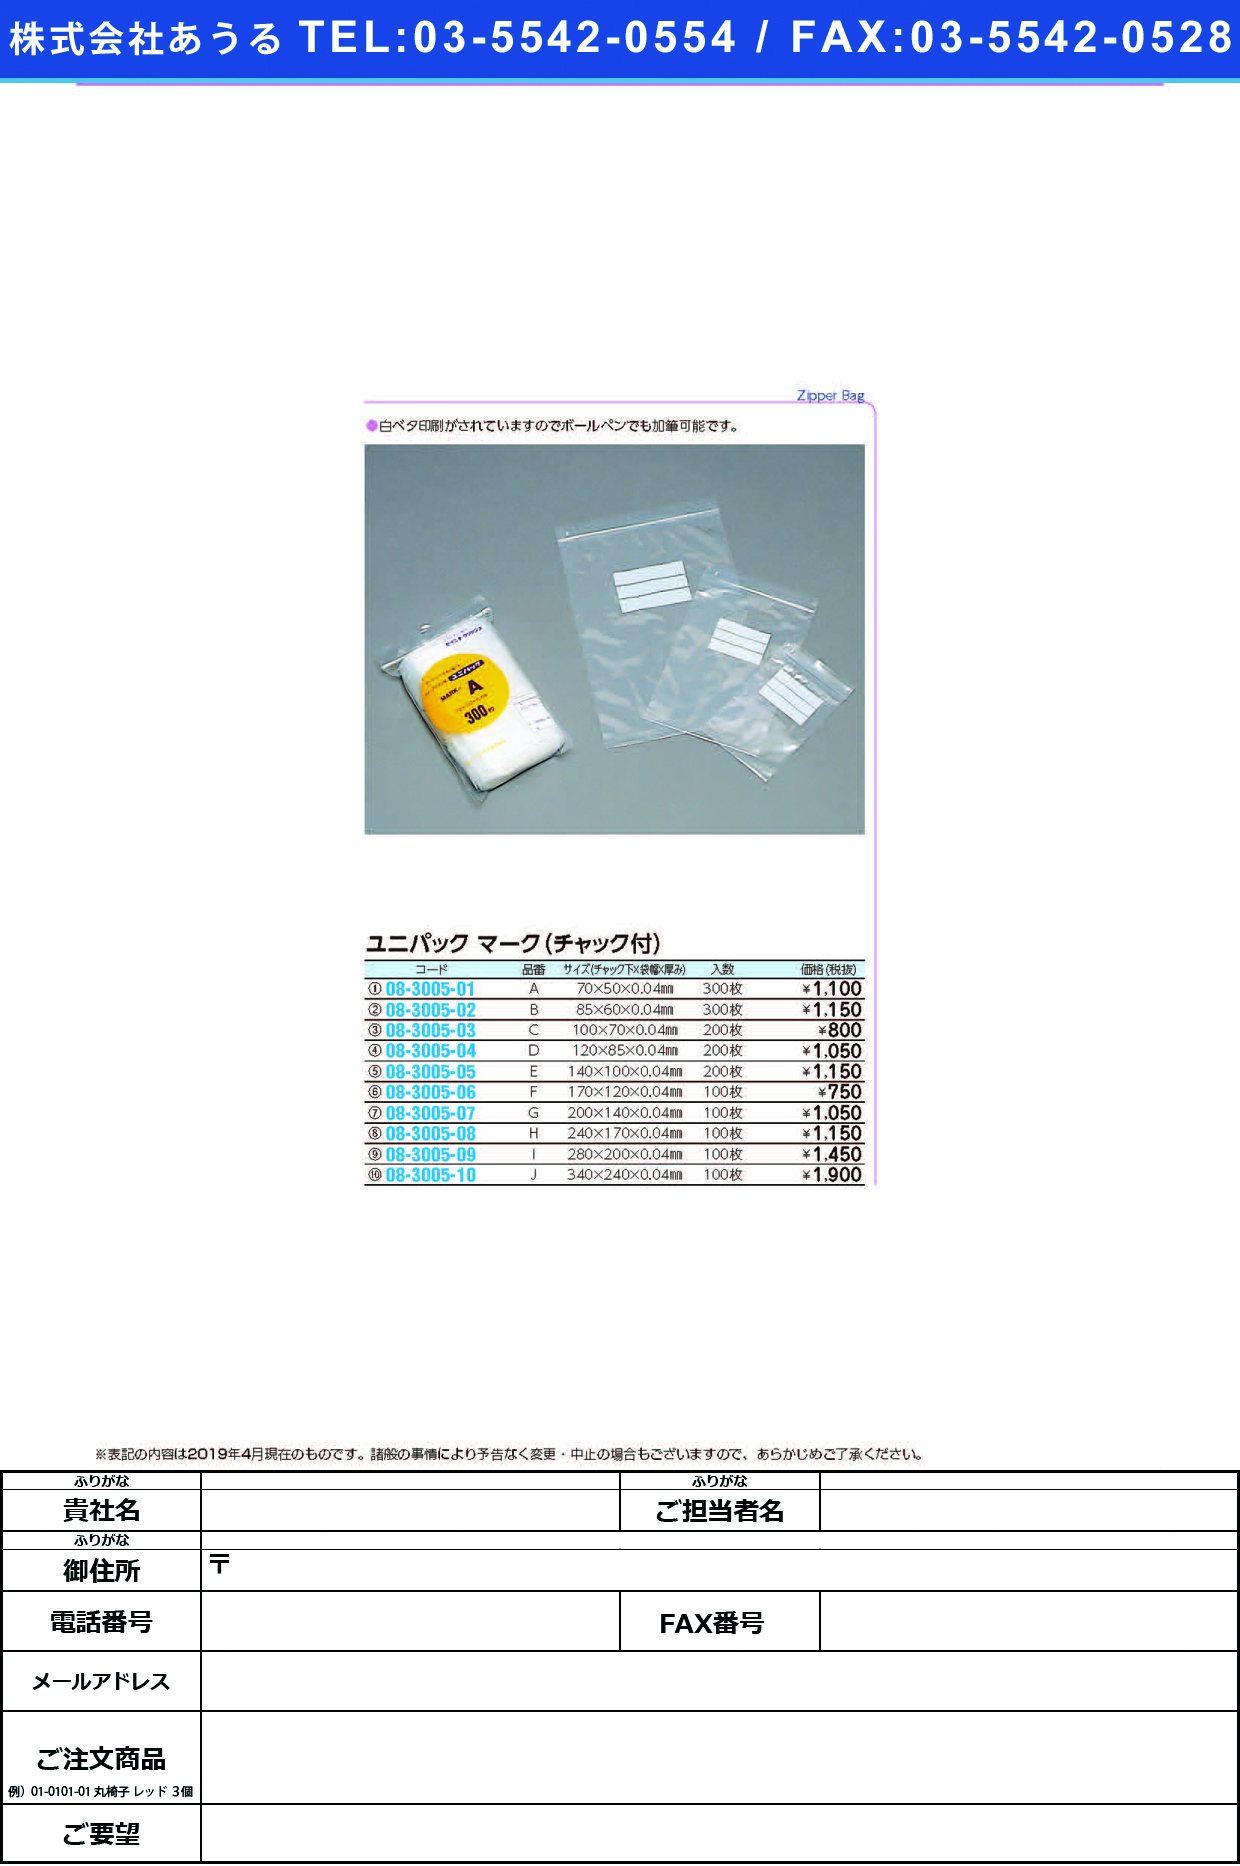 (08-3005-04)ユニパックマーク（チャック付）Ｄ MARK-D(120X85)200ﾏｲ ﾕﾆﾊﾟｯｸﾏｰｸ(ﾁｬｯｸﾂｷ)D【1袋単位】【2019年カタログ商品】